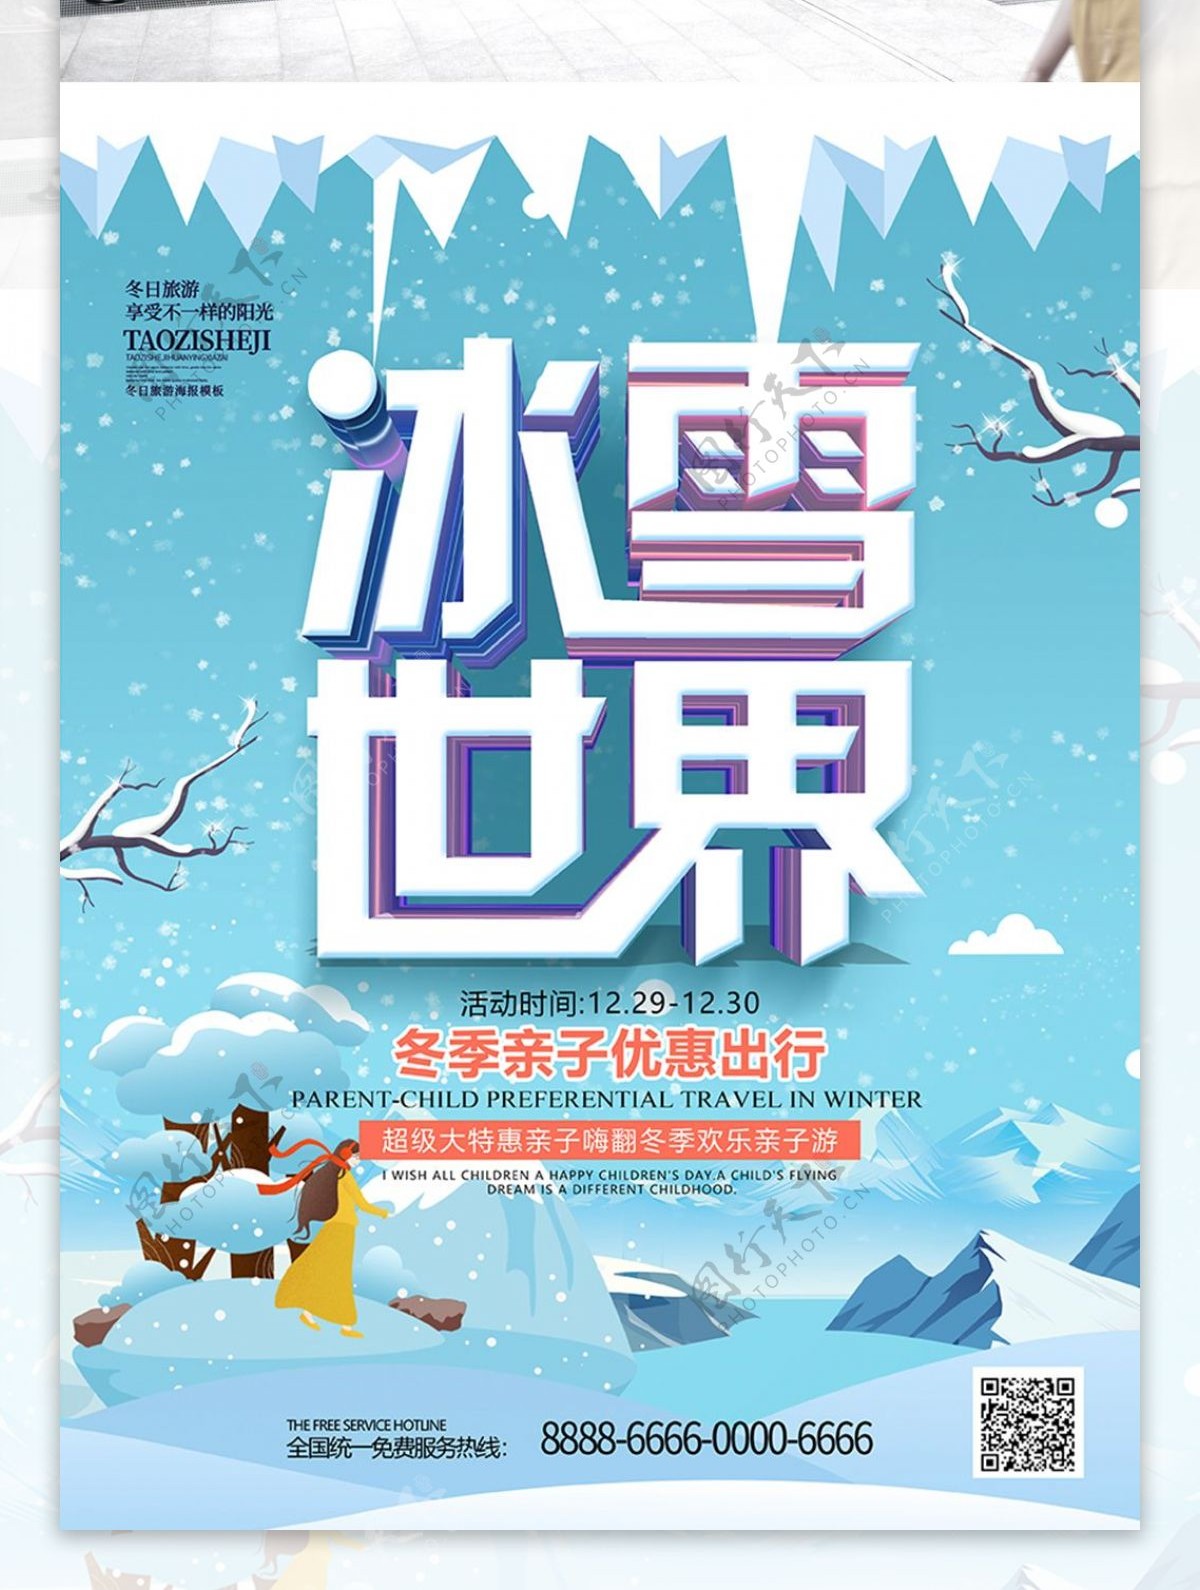 手绘插画冰雪世界冰雪乐园冬季旅游海报